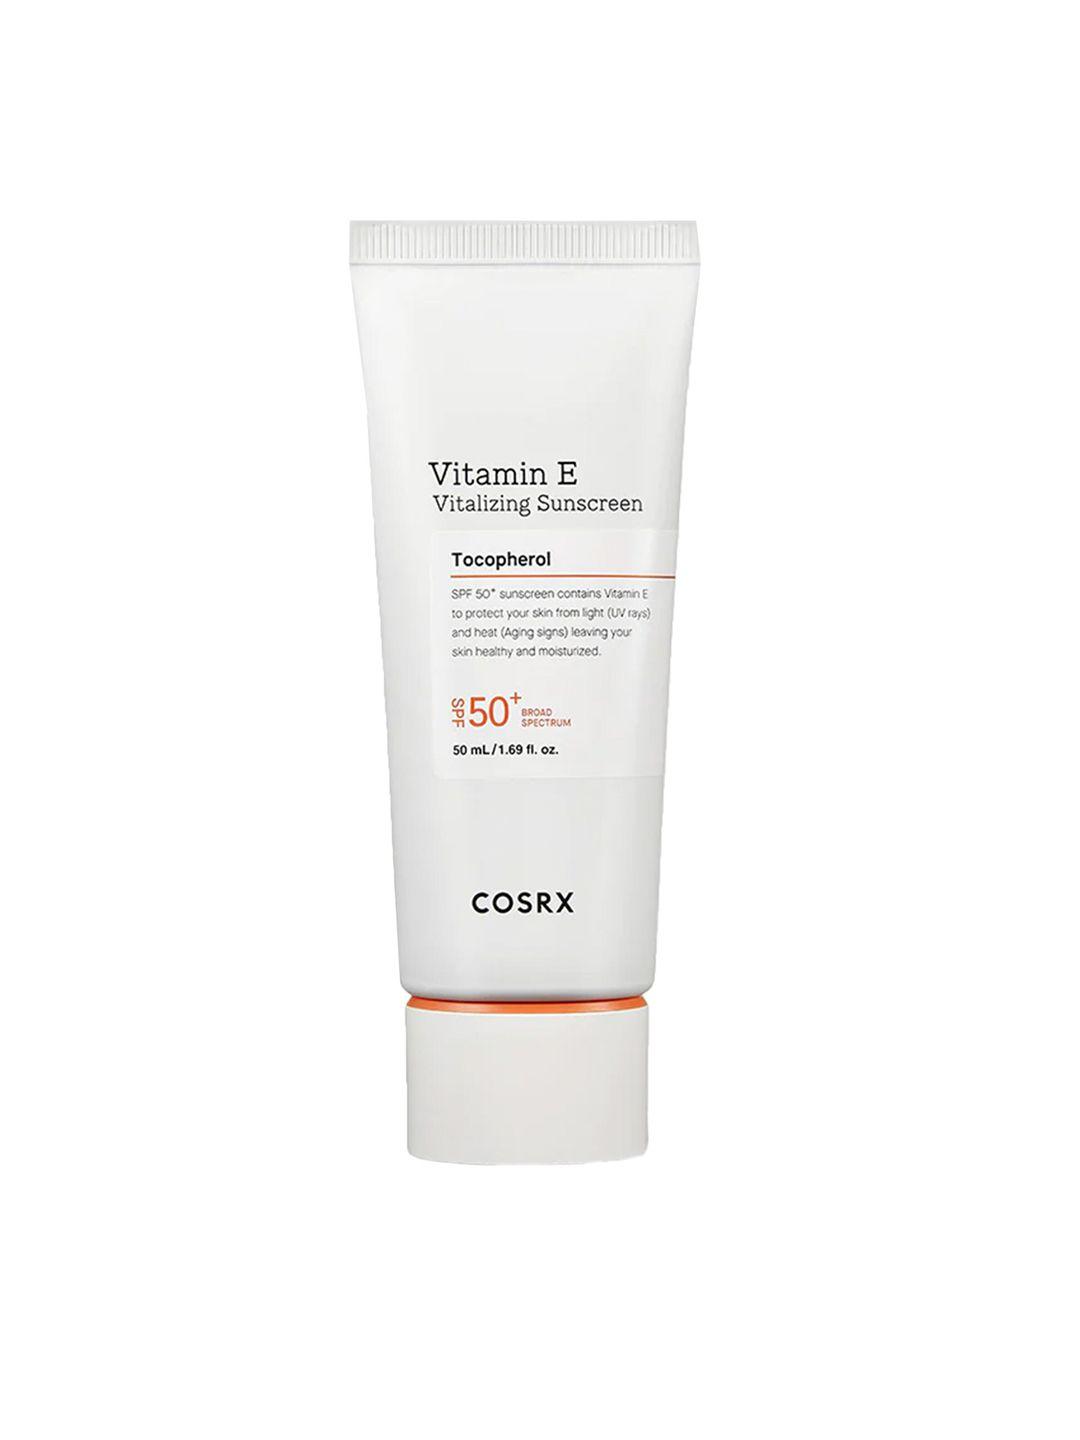 COSRX Vitamin E Vitalizing Sunscreen 50 ml